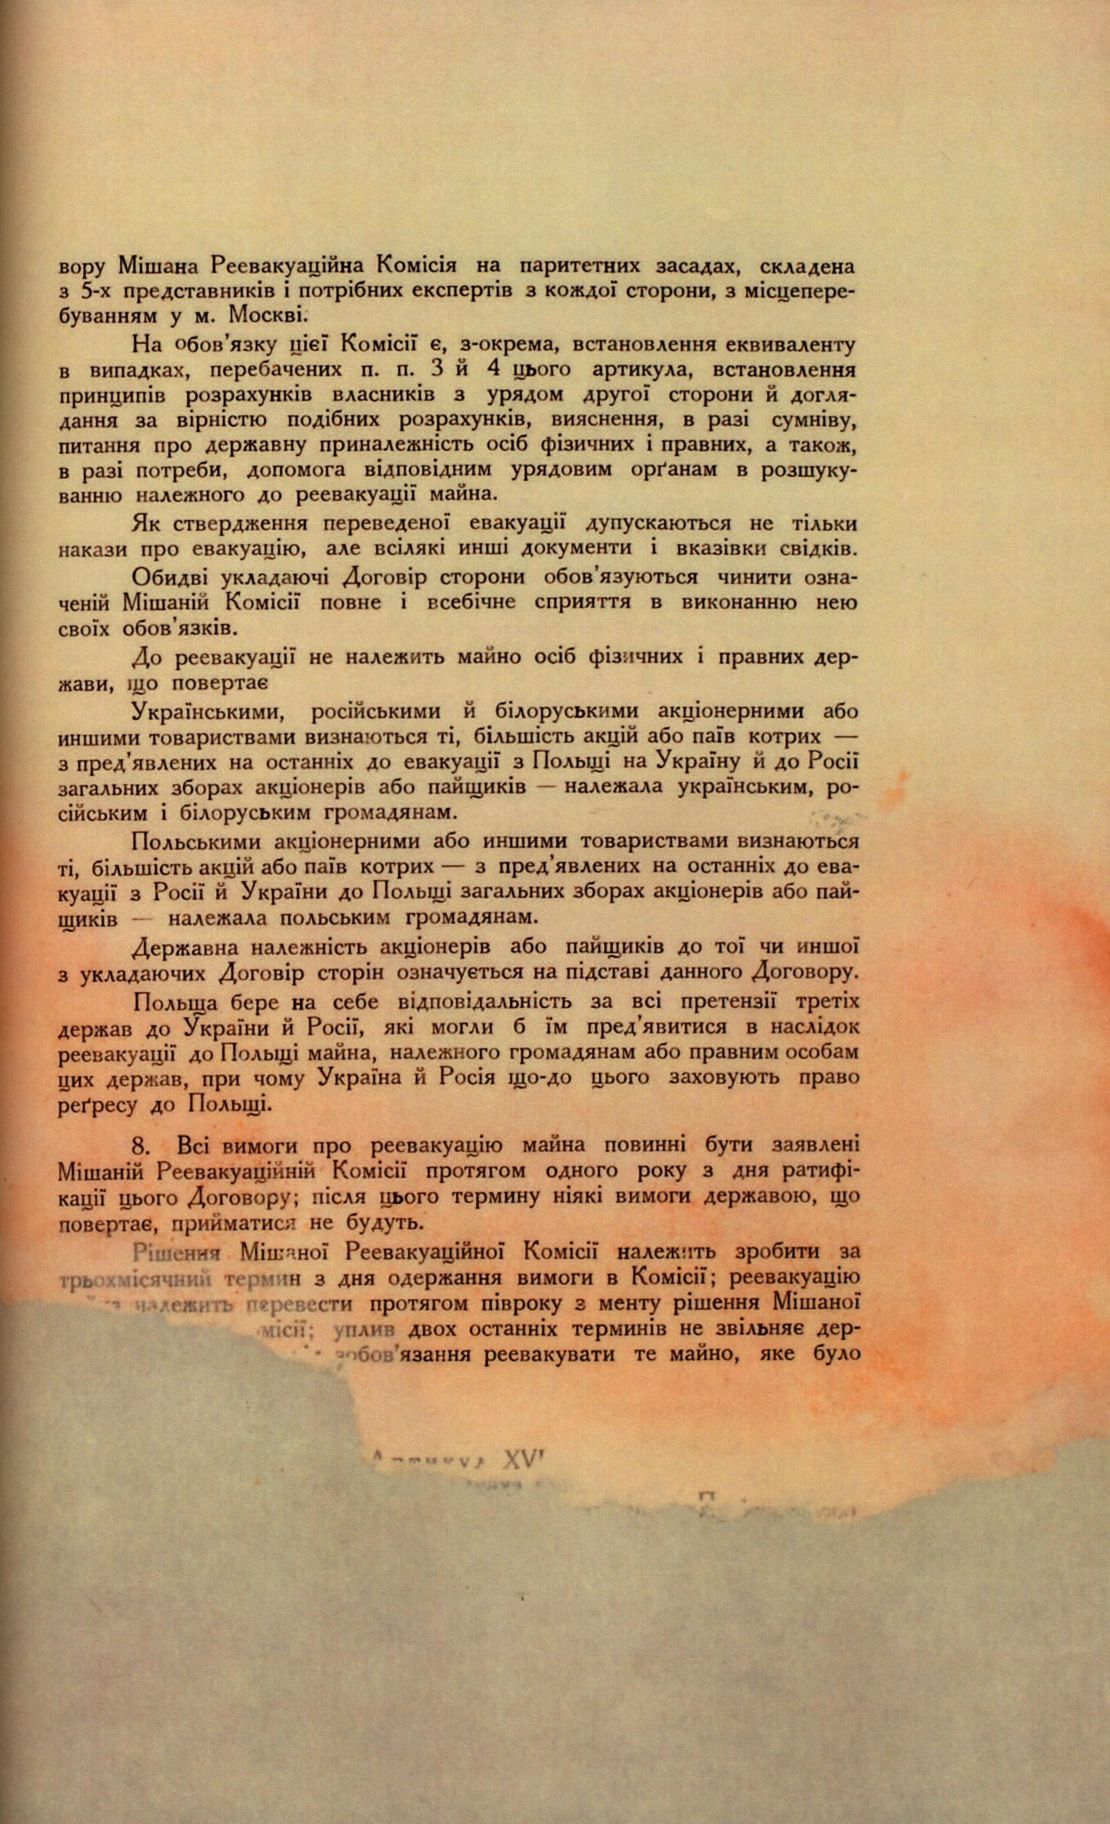 Traktat Pokoju między Polską a Rosją i Ukrainą podpisany w Rydze dnia 18 marca 1921 roku, s. 49, MSZ, sygn. 6739.